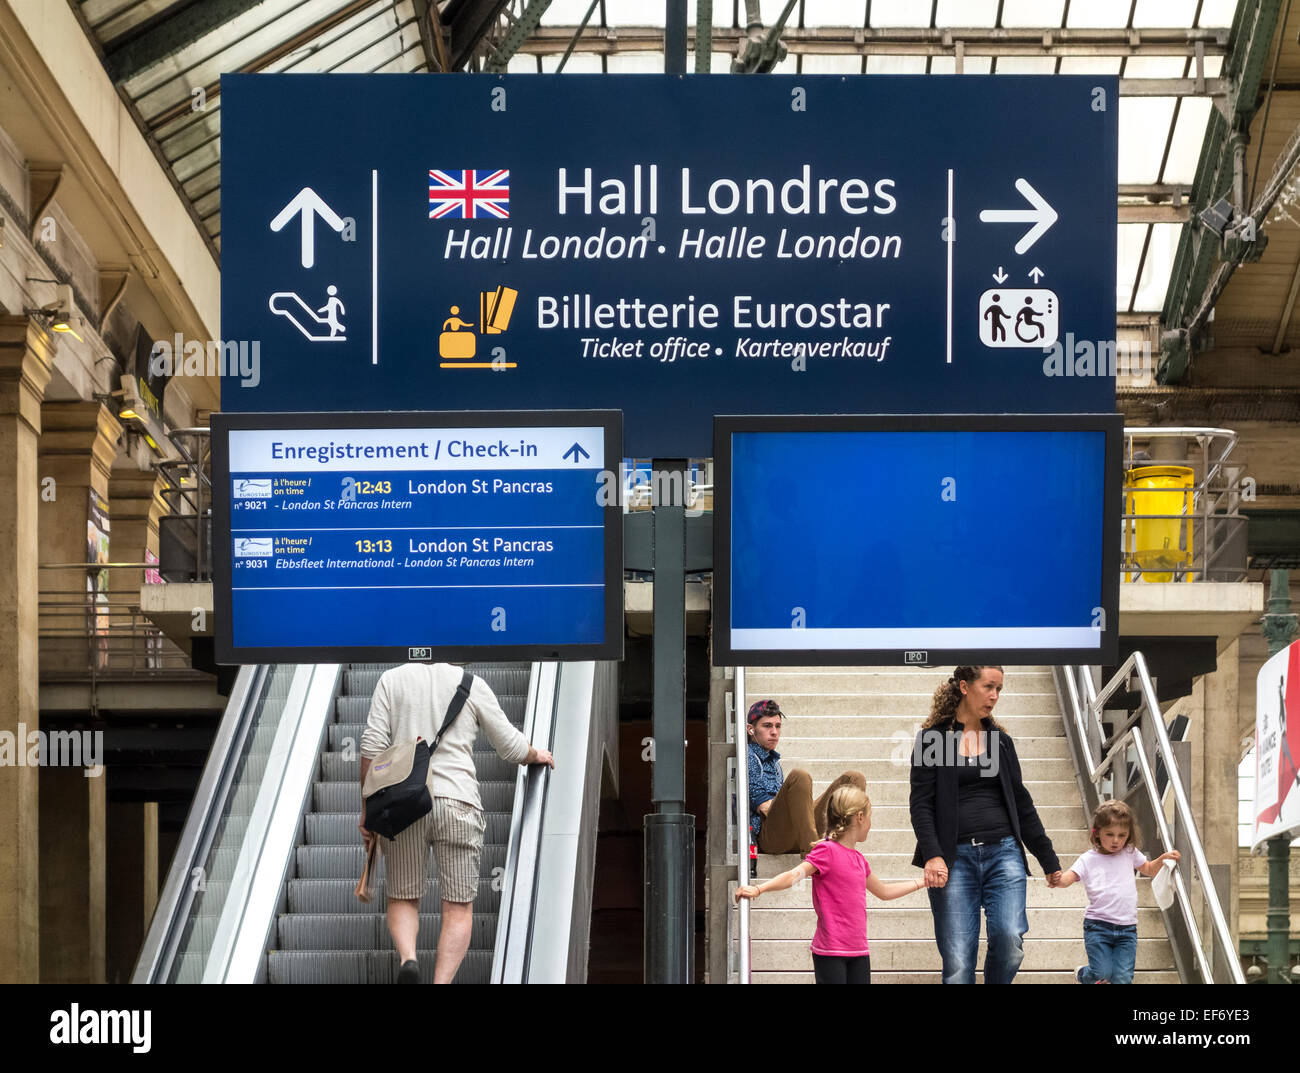 Paris Gare du Nord avec des voyageurs sous panneau indiquant à Paris à Londres train Eurostar hall de départ. Banque D'Images